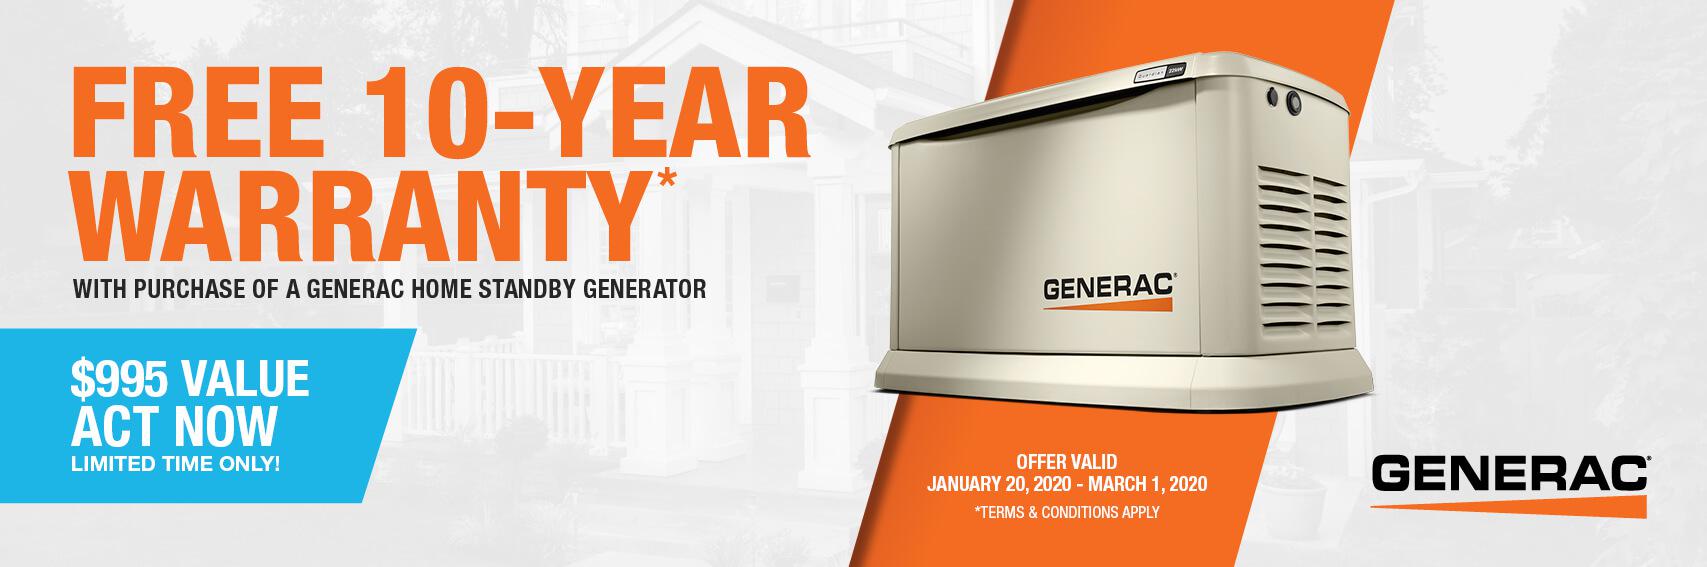 Homestandby Generator Deal | Warranty Offer | Generac Dealer | Franklin, MA